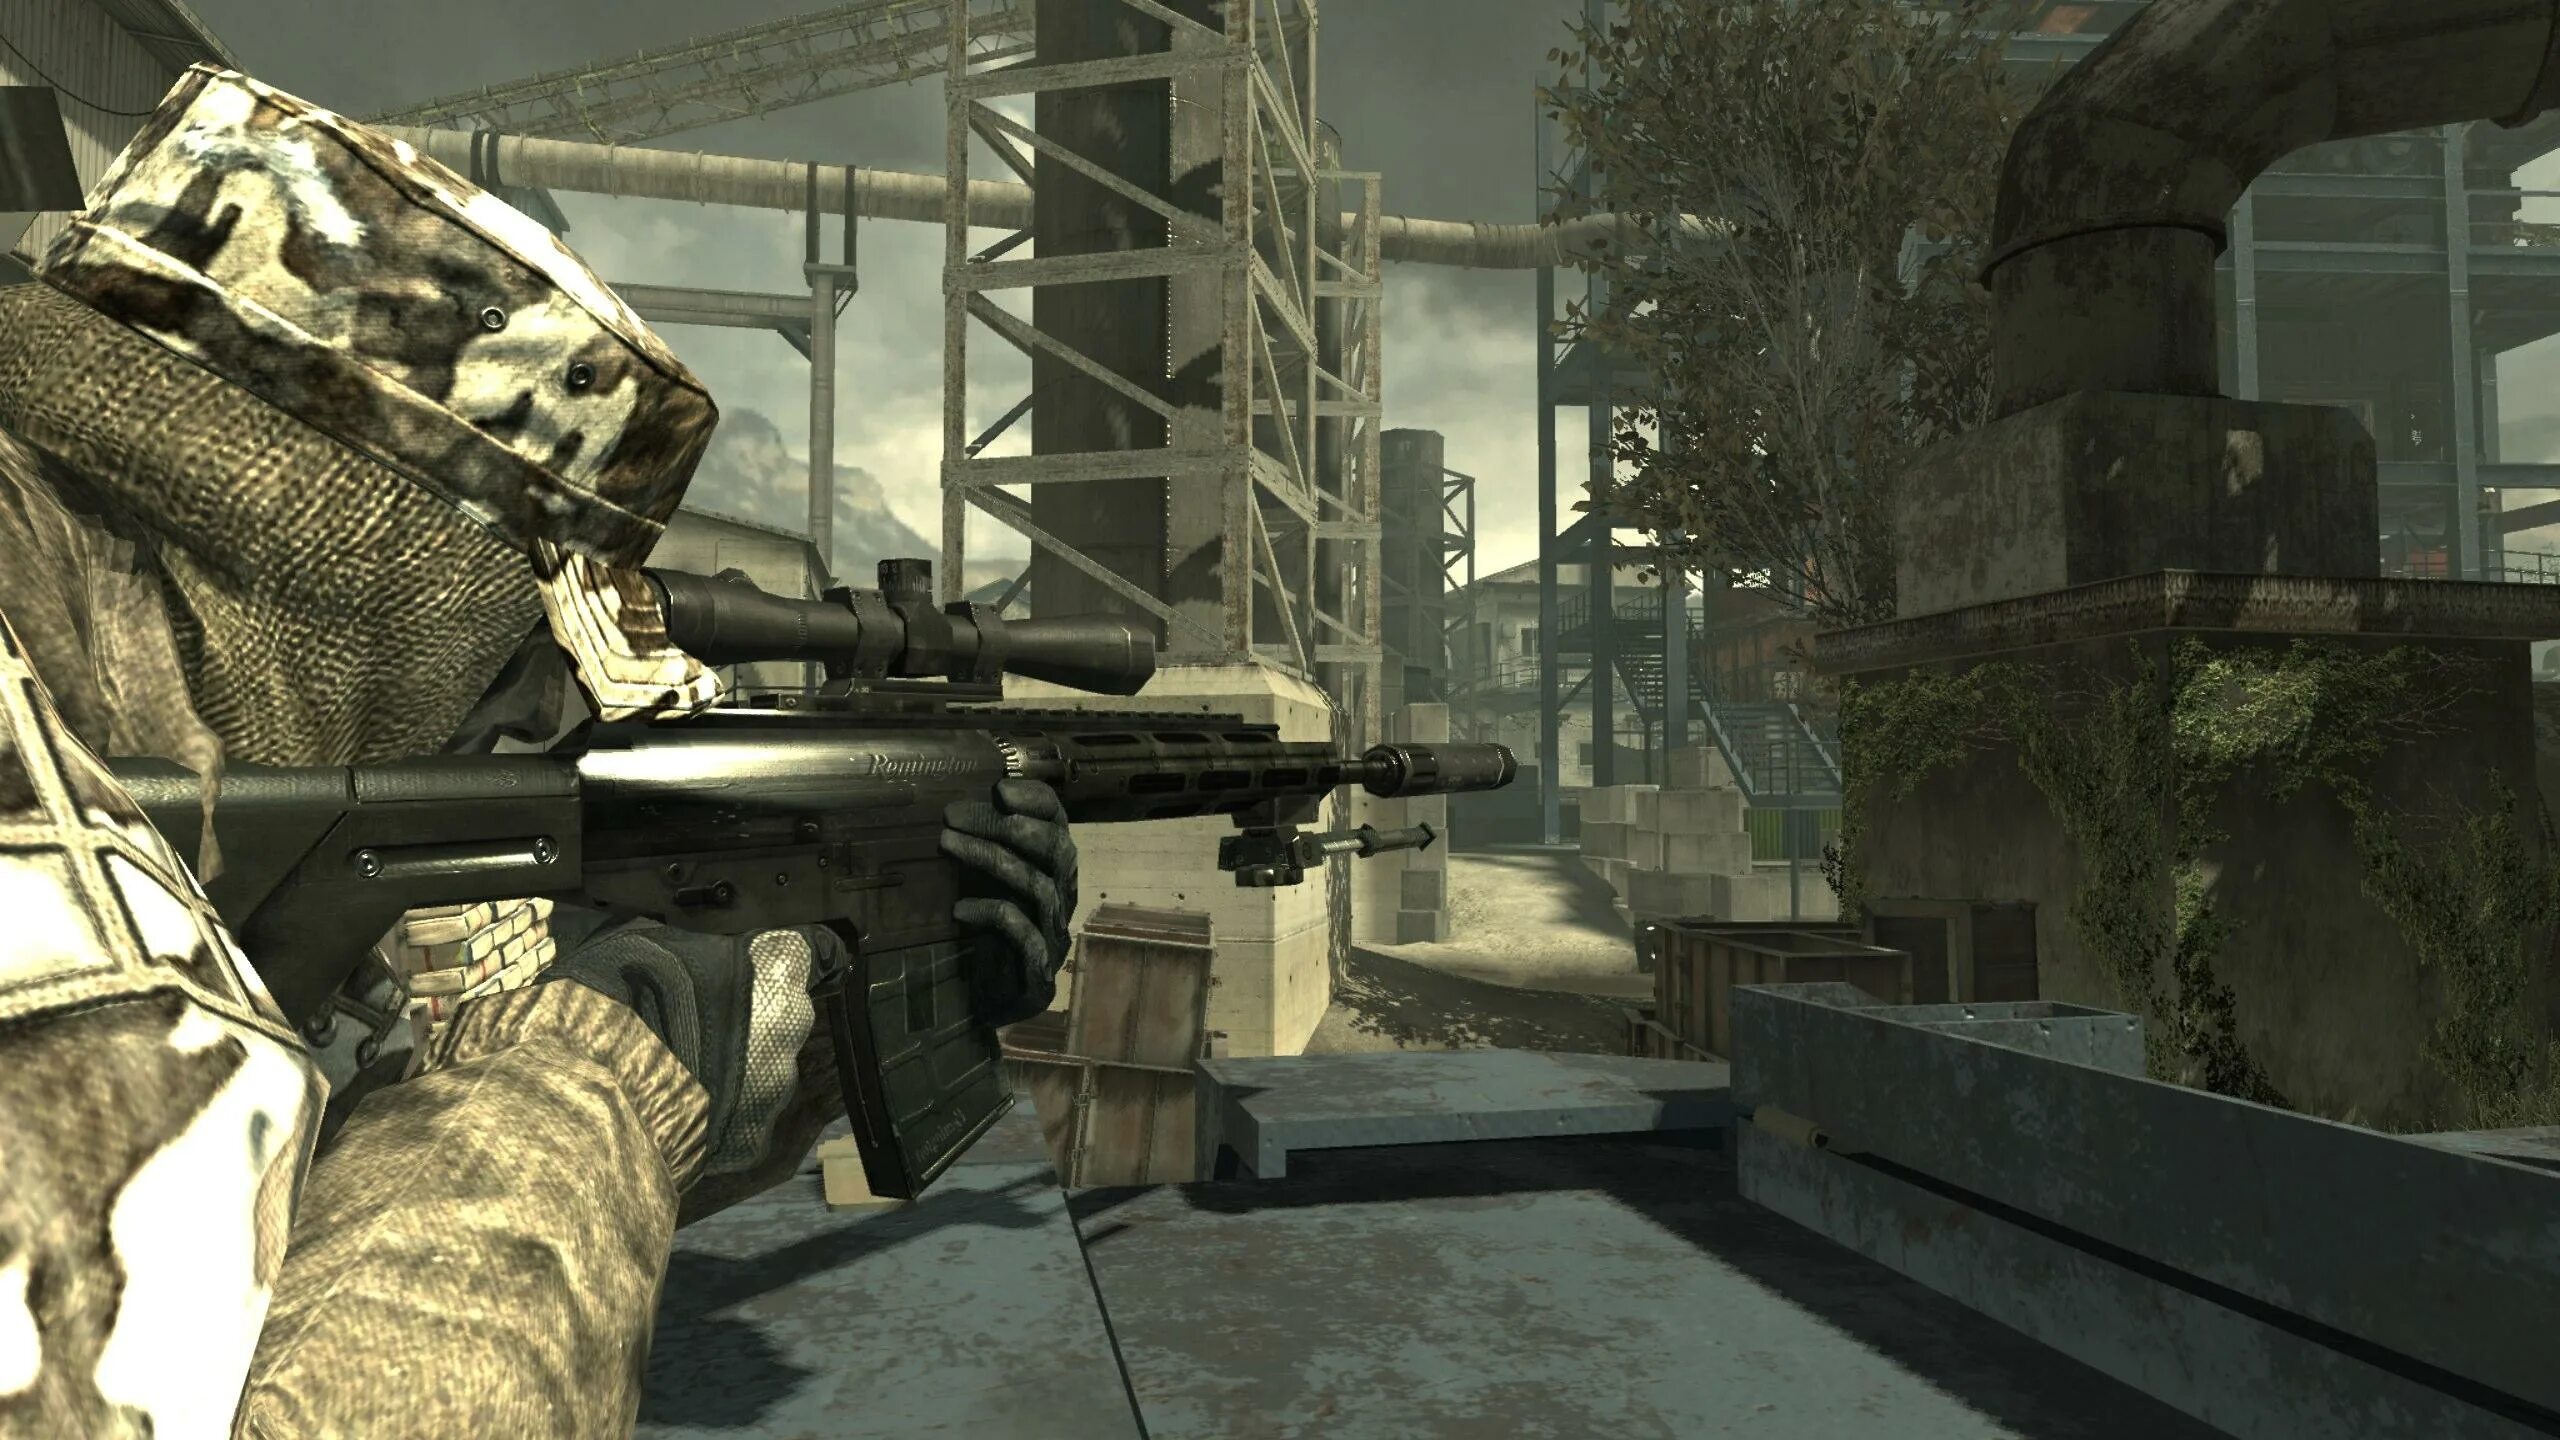 Call of Duty: Modern Warfare 3. Call of Duty Modern Warfare 3 2011. Cod Modern Warfare 3. Call of Duty mw3. Модерн варфаер 3 бесплатная версия